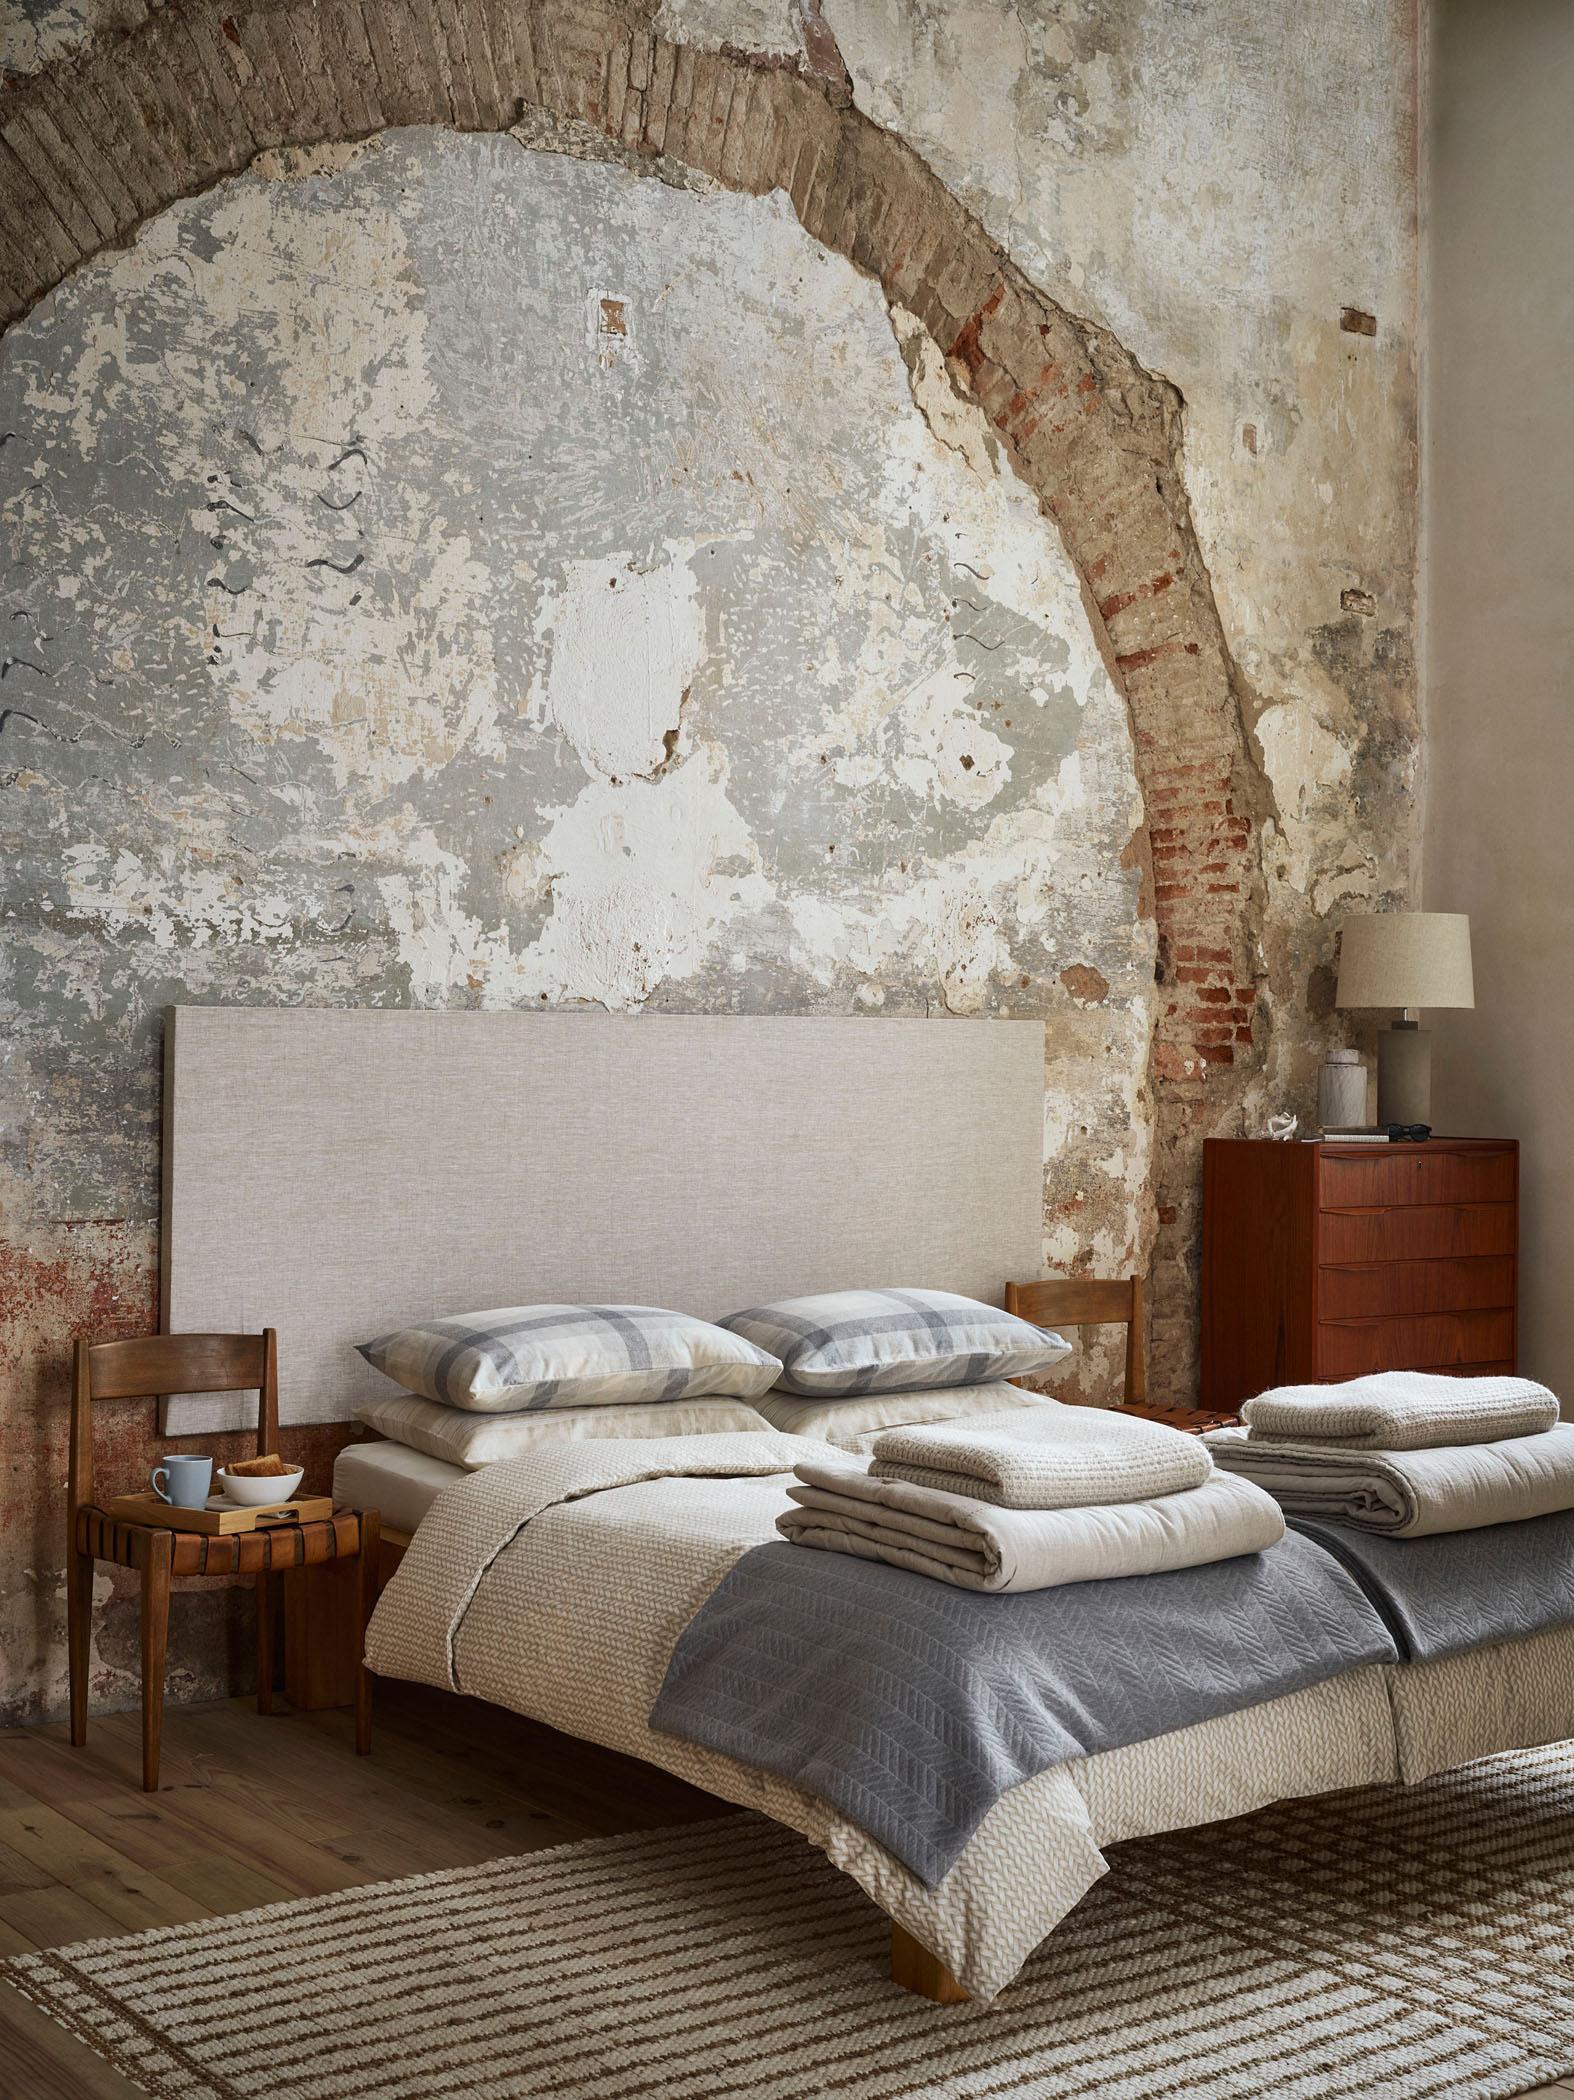 Schlafzimmer mit rustikalem Flair #stuhl #bett #teppich #bettwäsche #mediterran #tagesdecke #kommode #gestreifterteppich #rustikal #zarahome #rundbogen #zimmergestaltung ©Zara Home